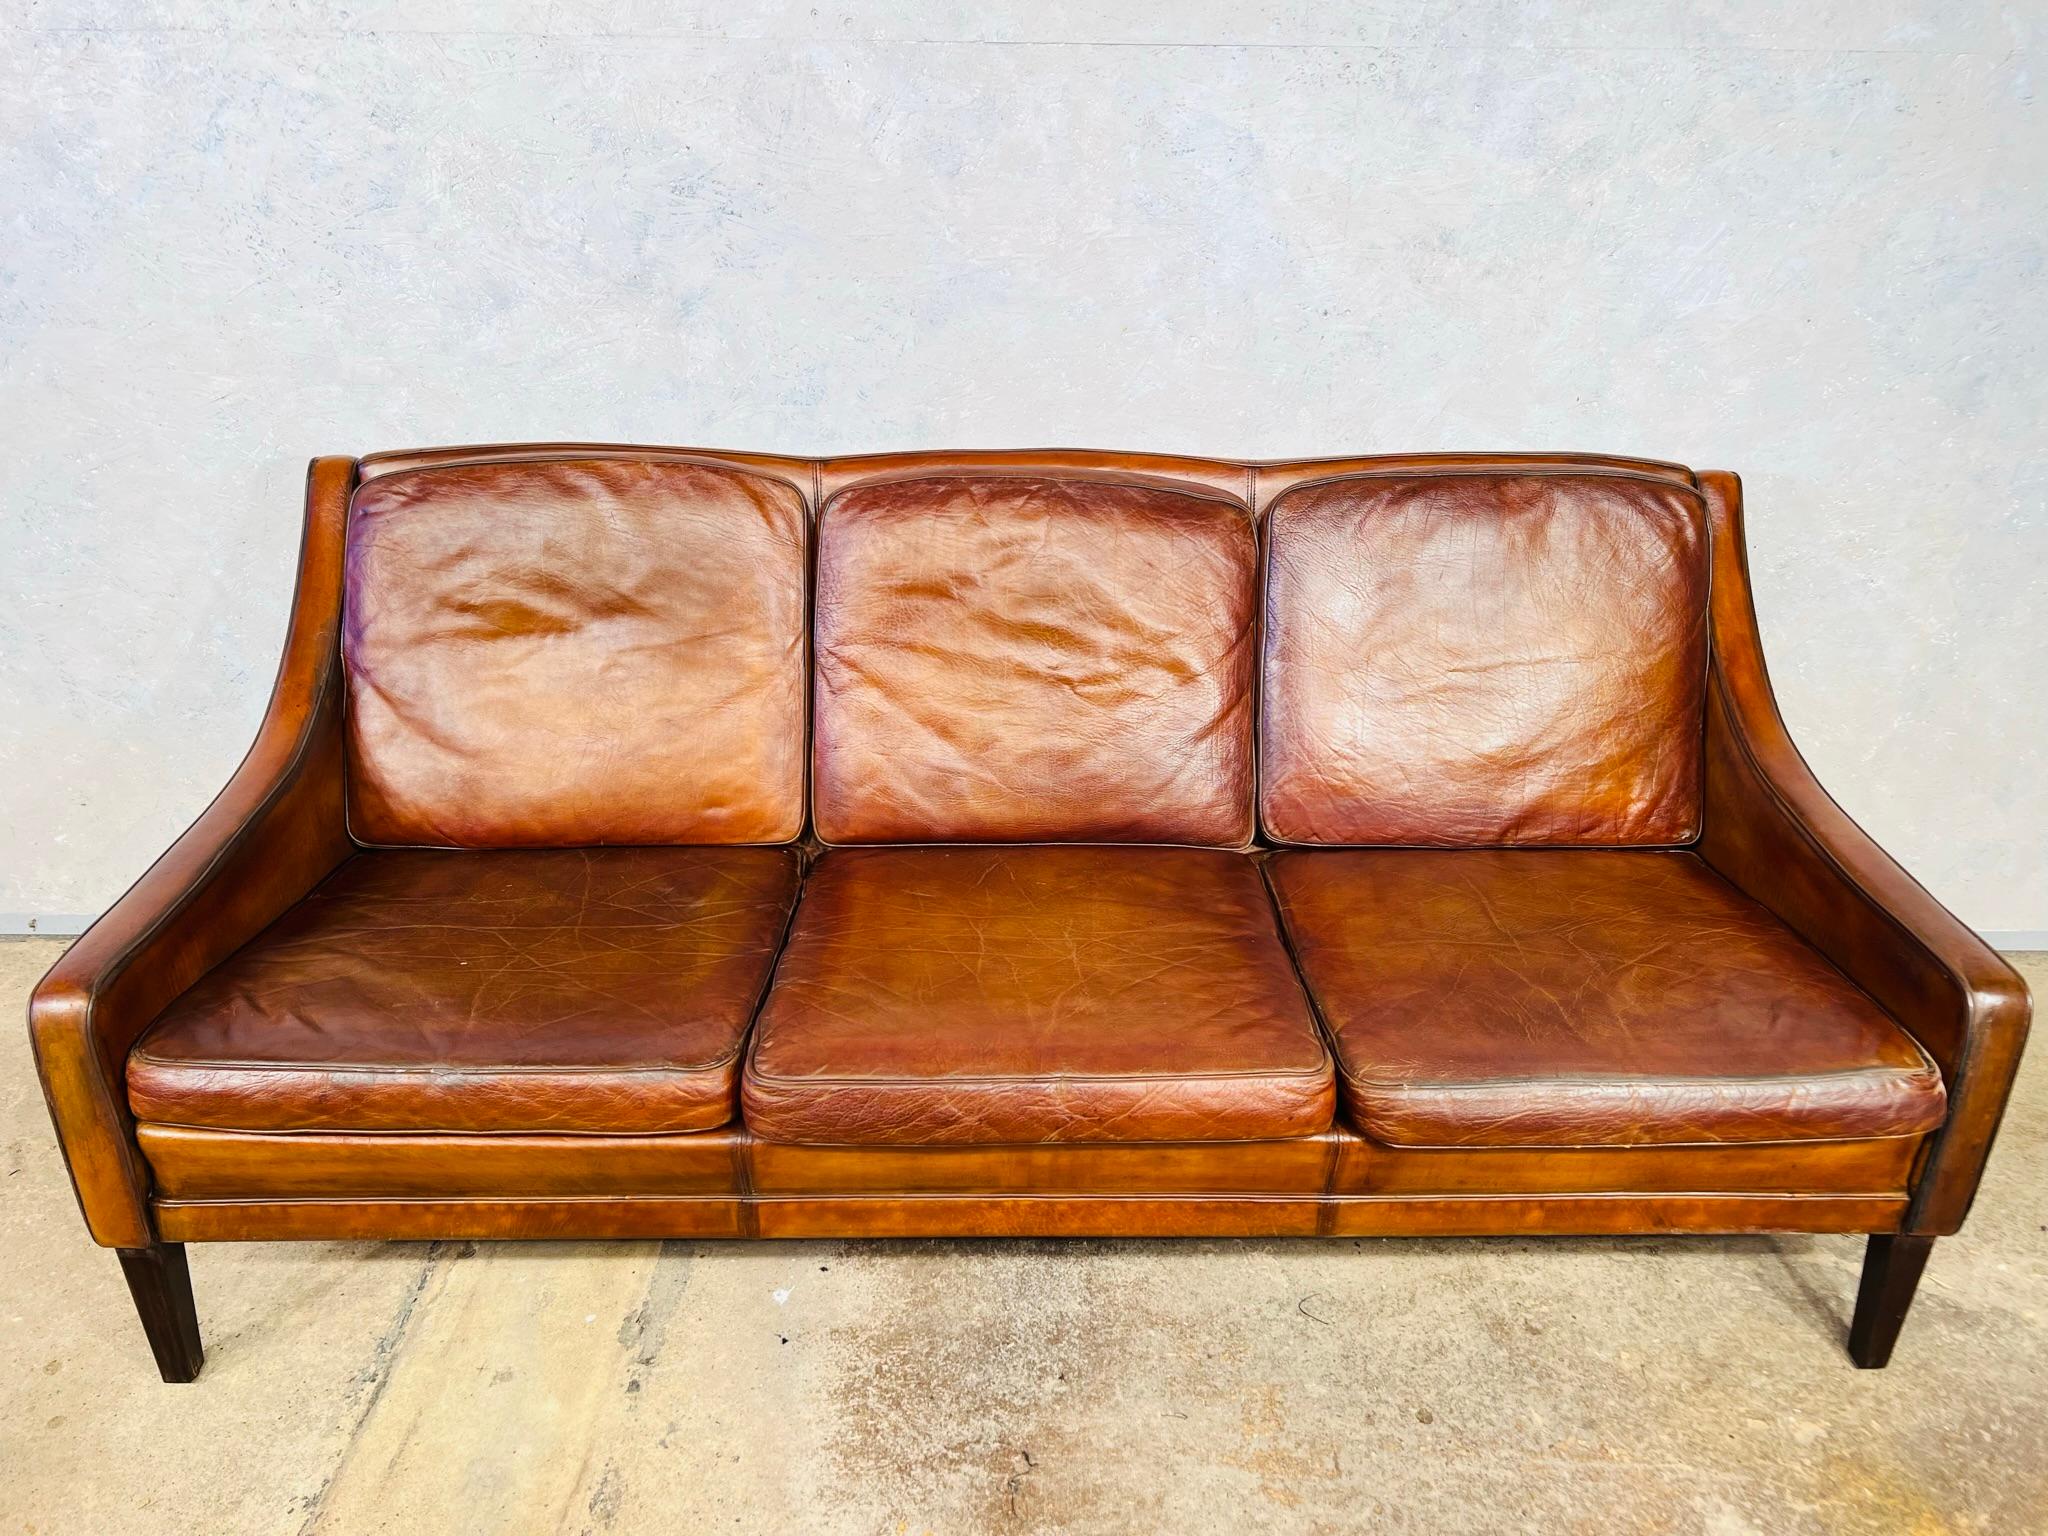 70s leather sofa